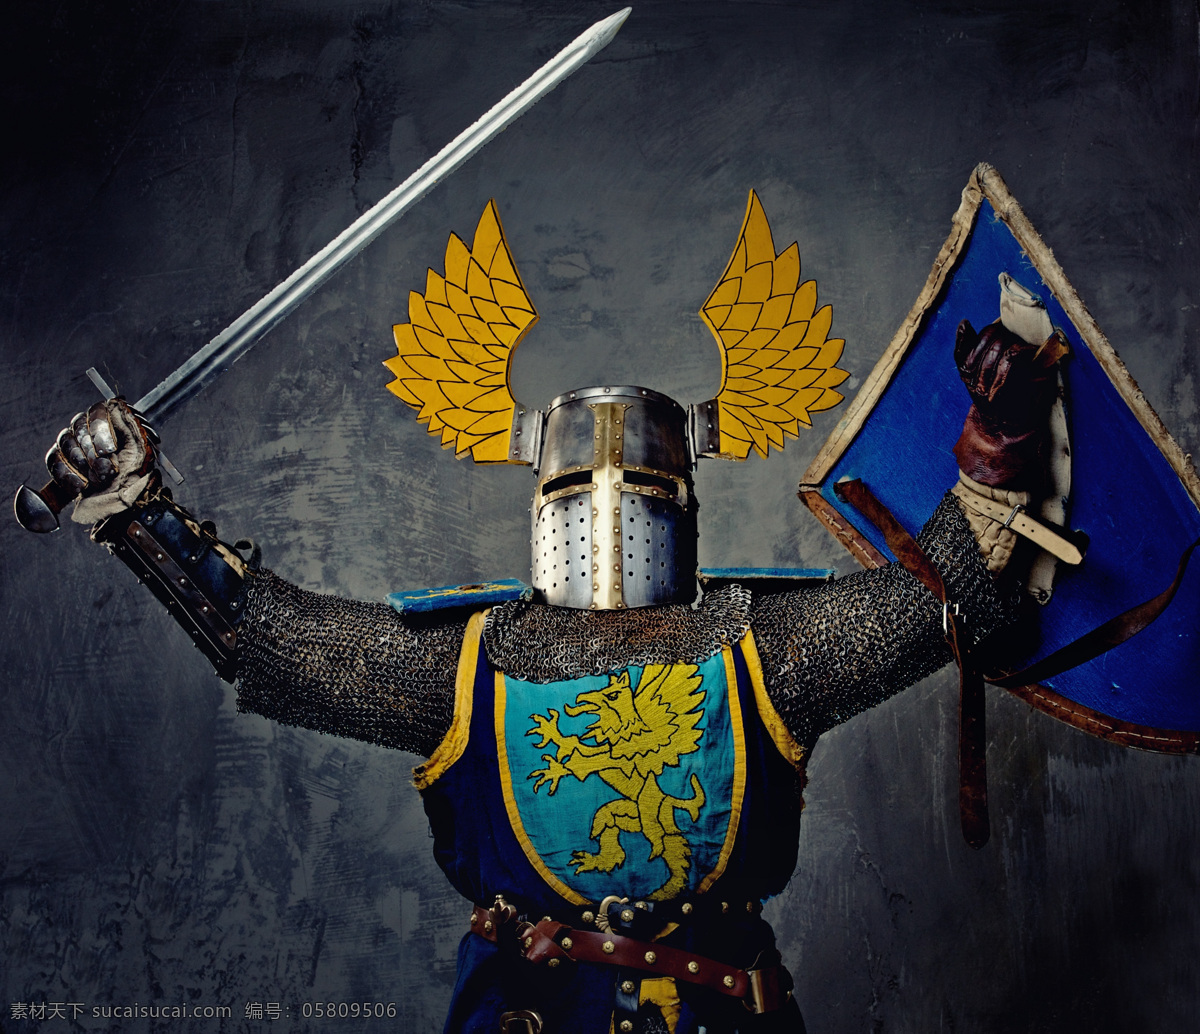 欧洲 武士 欧洲武士 骑士 战士 古代士兵 宝剑 盾牌 其他人物 人物图片